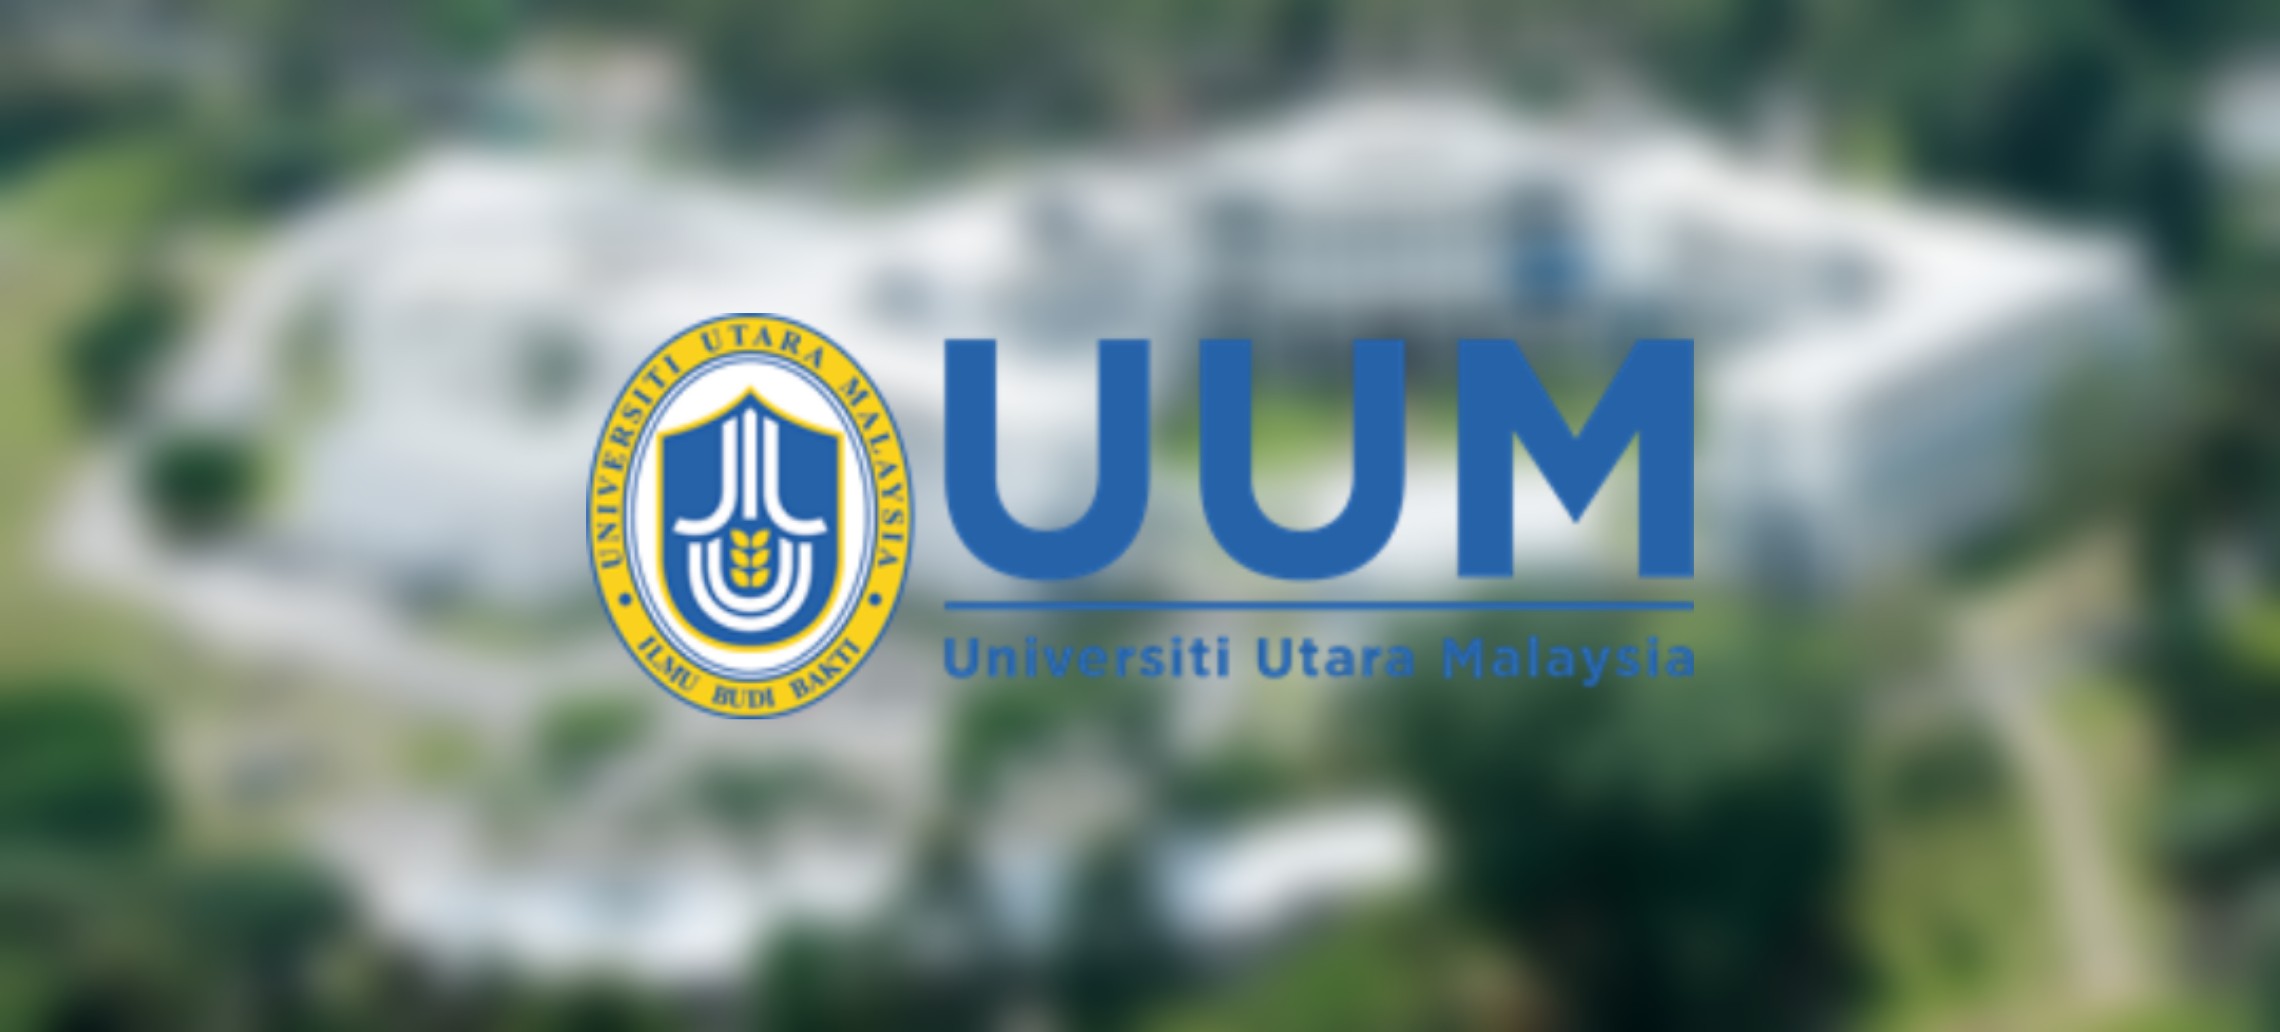 Syarat Kemasukan Uum 2021 Universiti Utara Malaysia